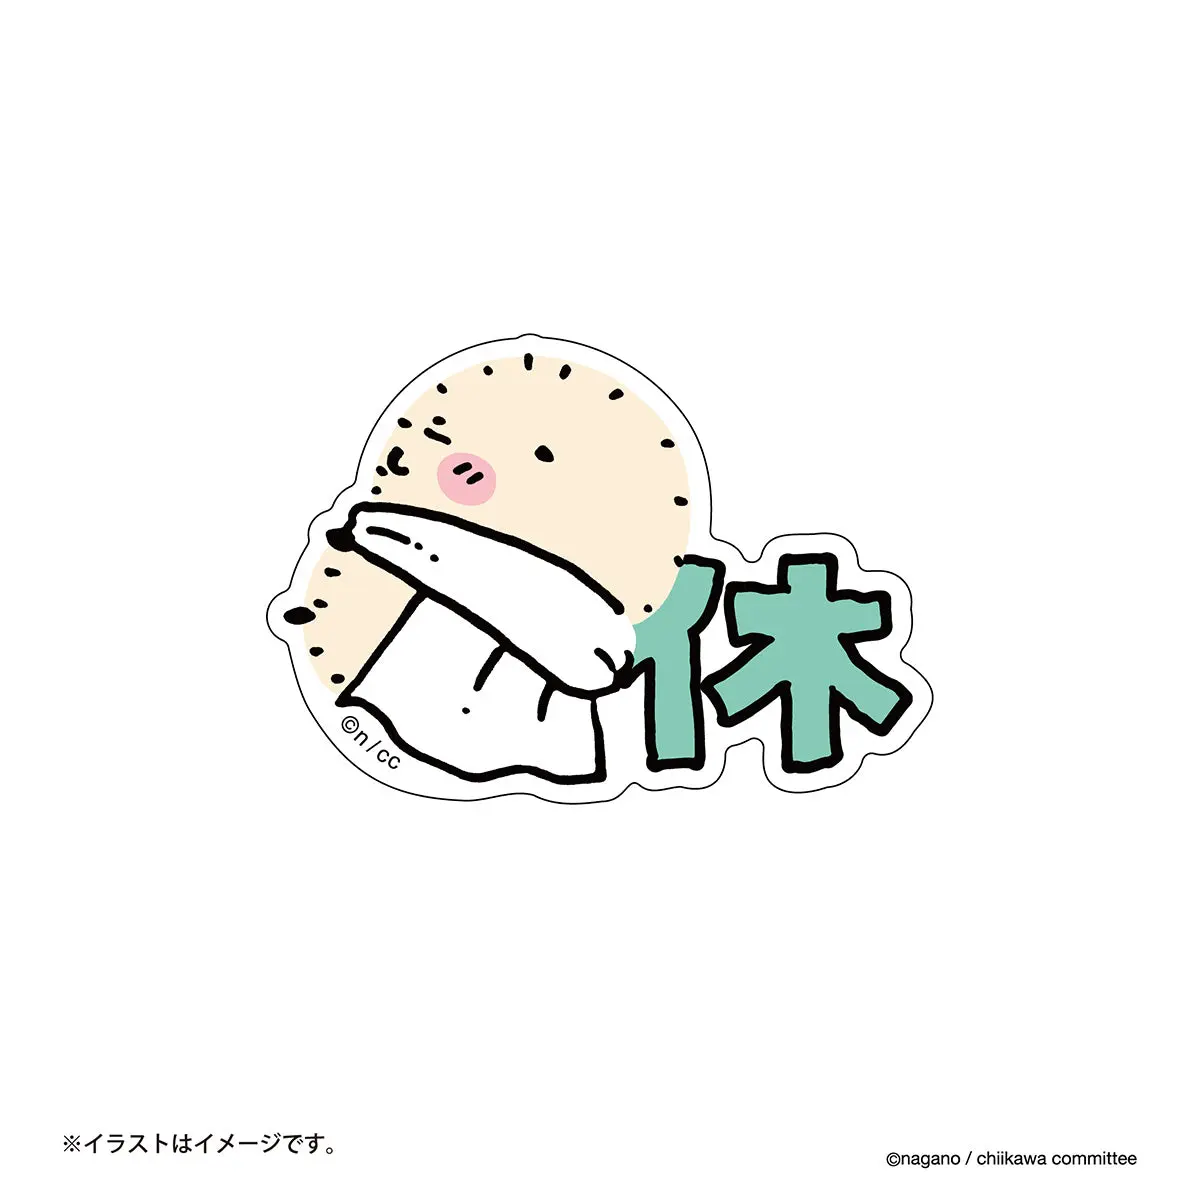 Chiikawa Stickers Just right for Smartphone - Chiikawa / Rakko